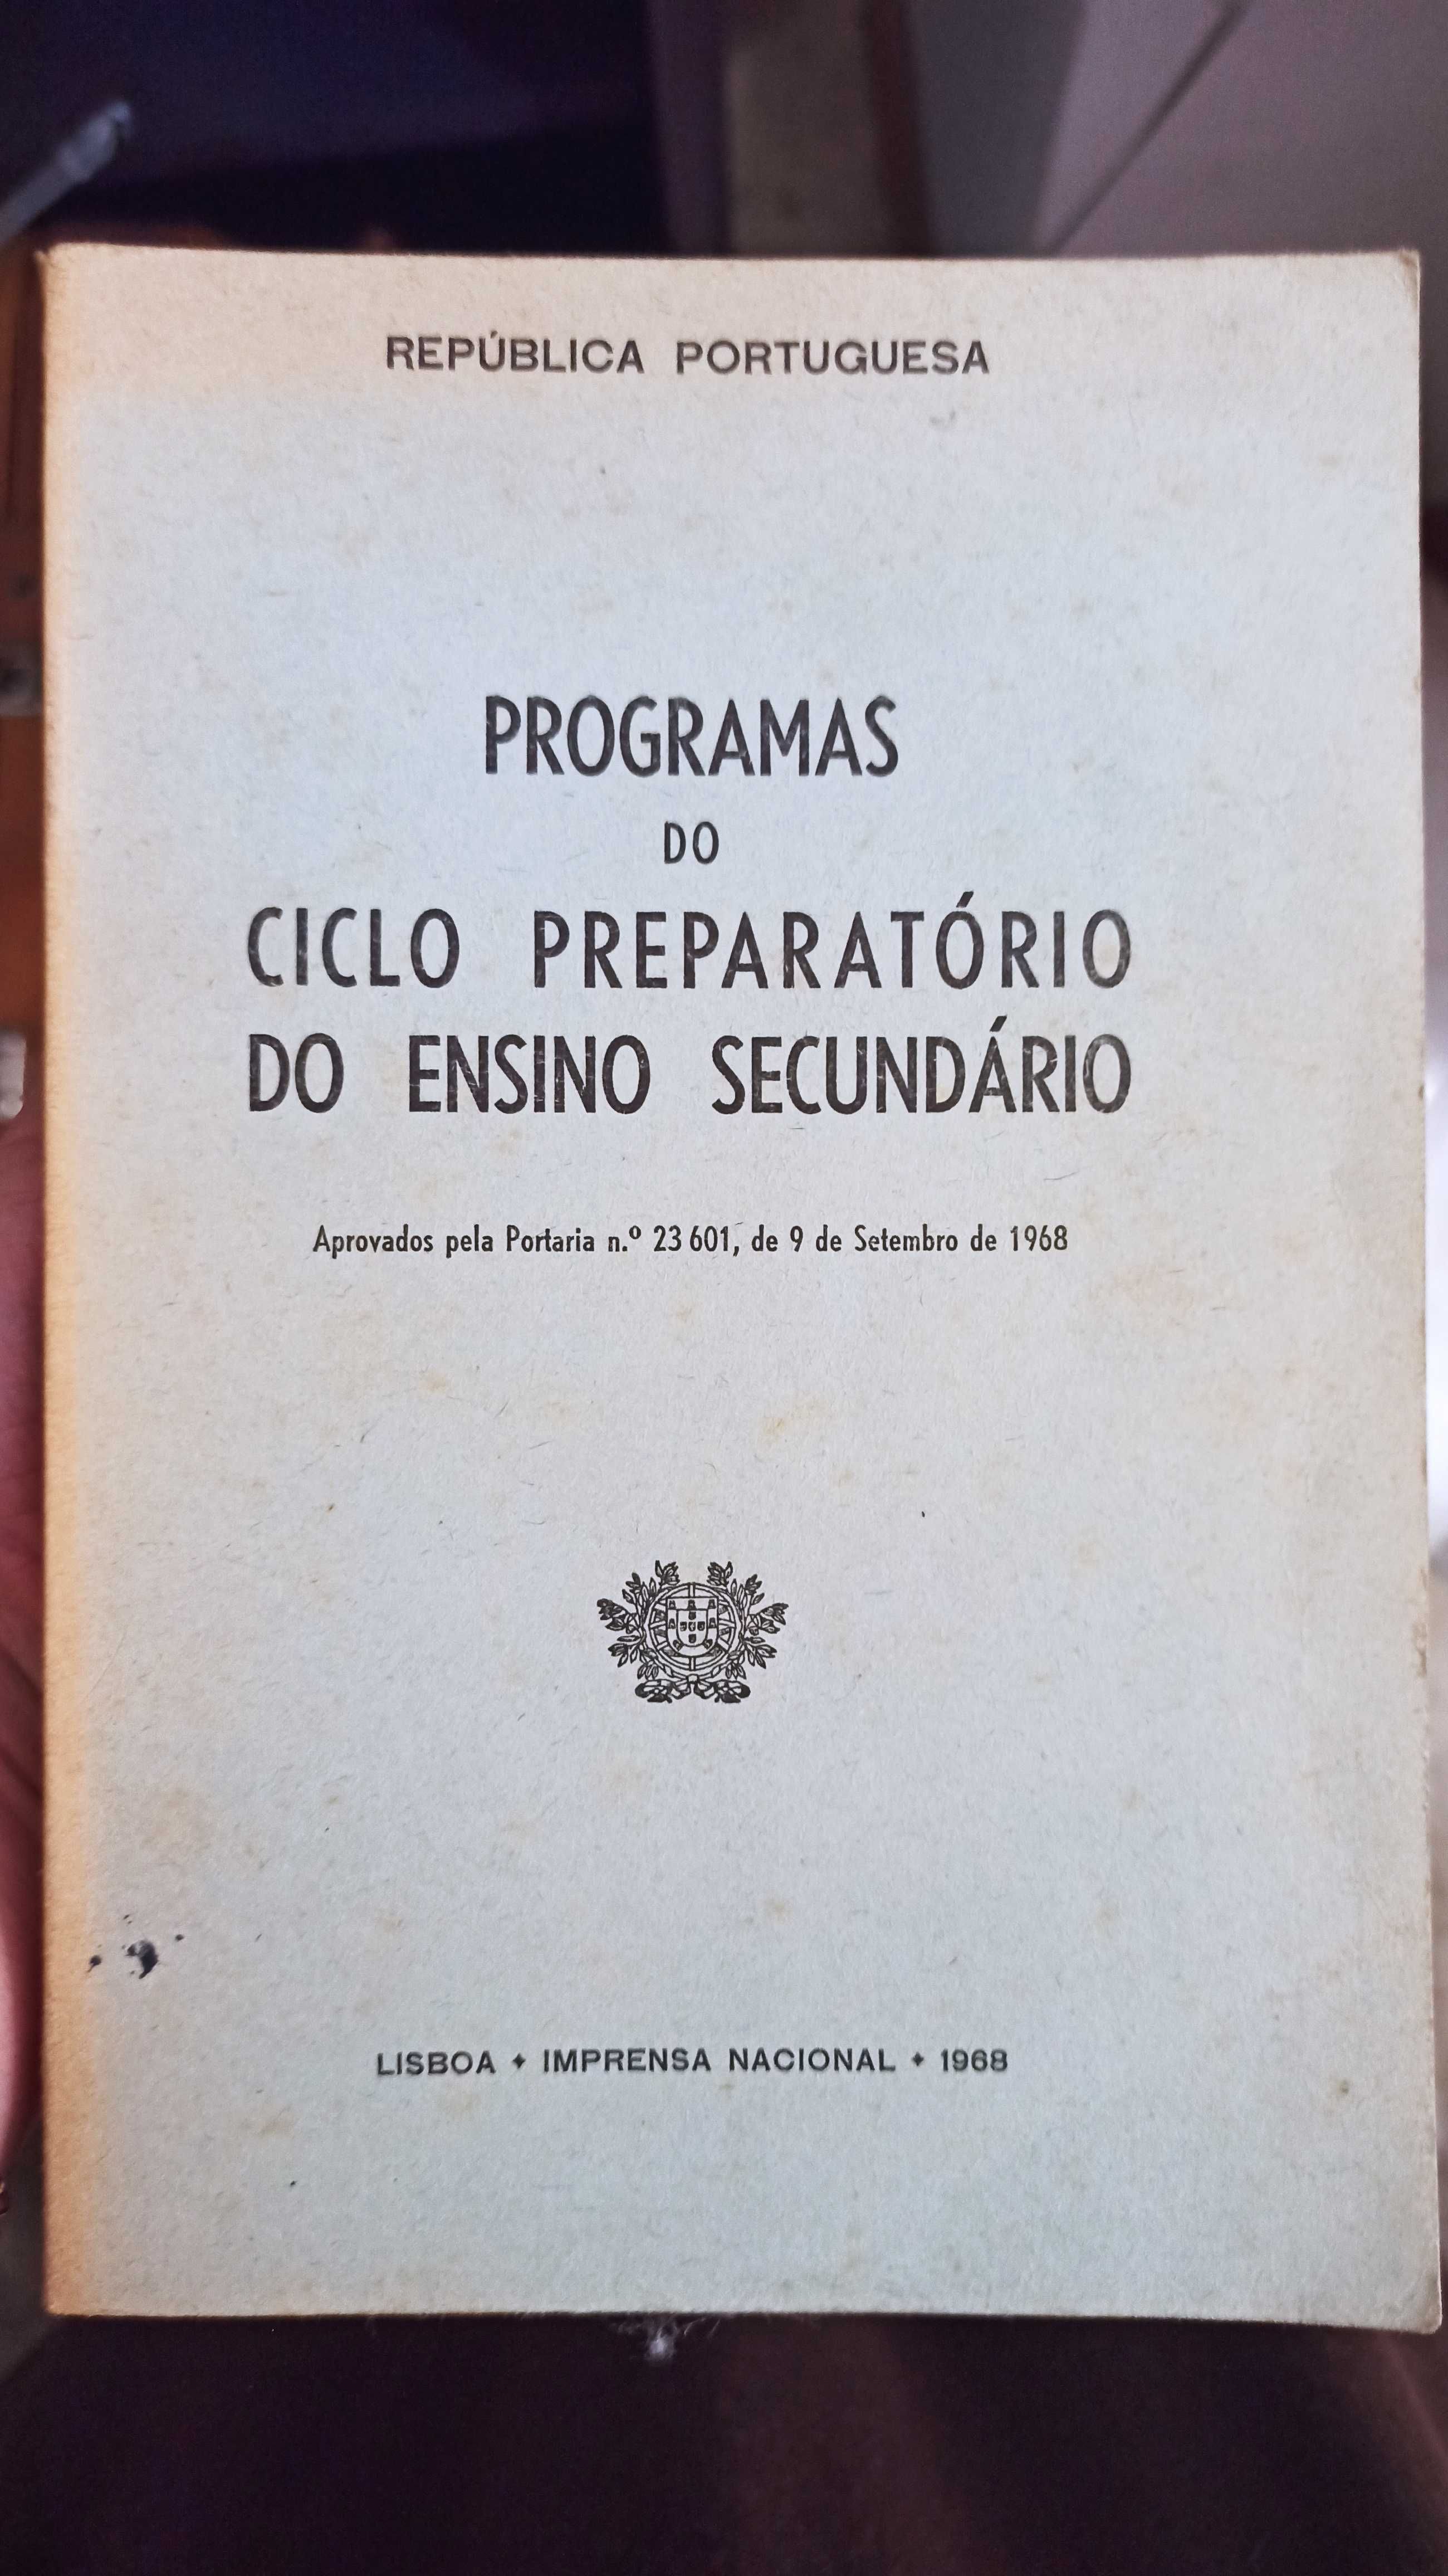 Programas escolares antigos (entre 1967 e 1974)